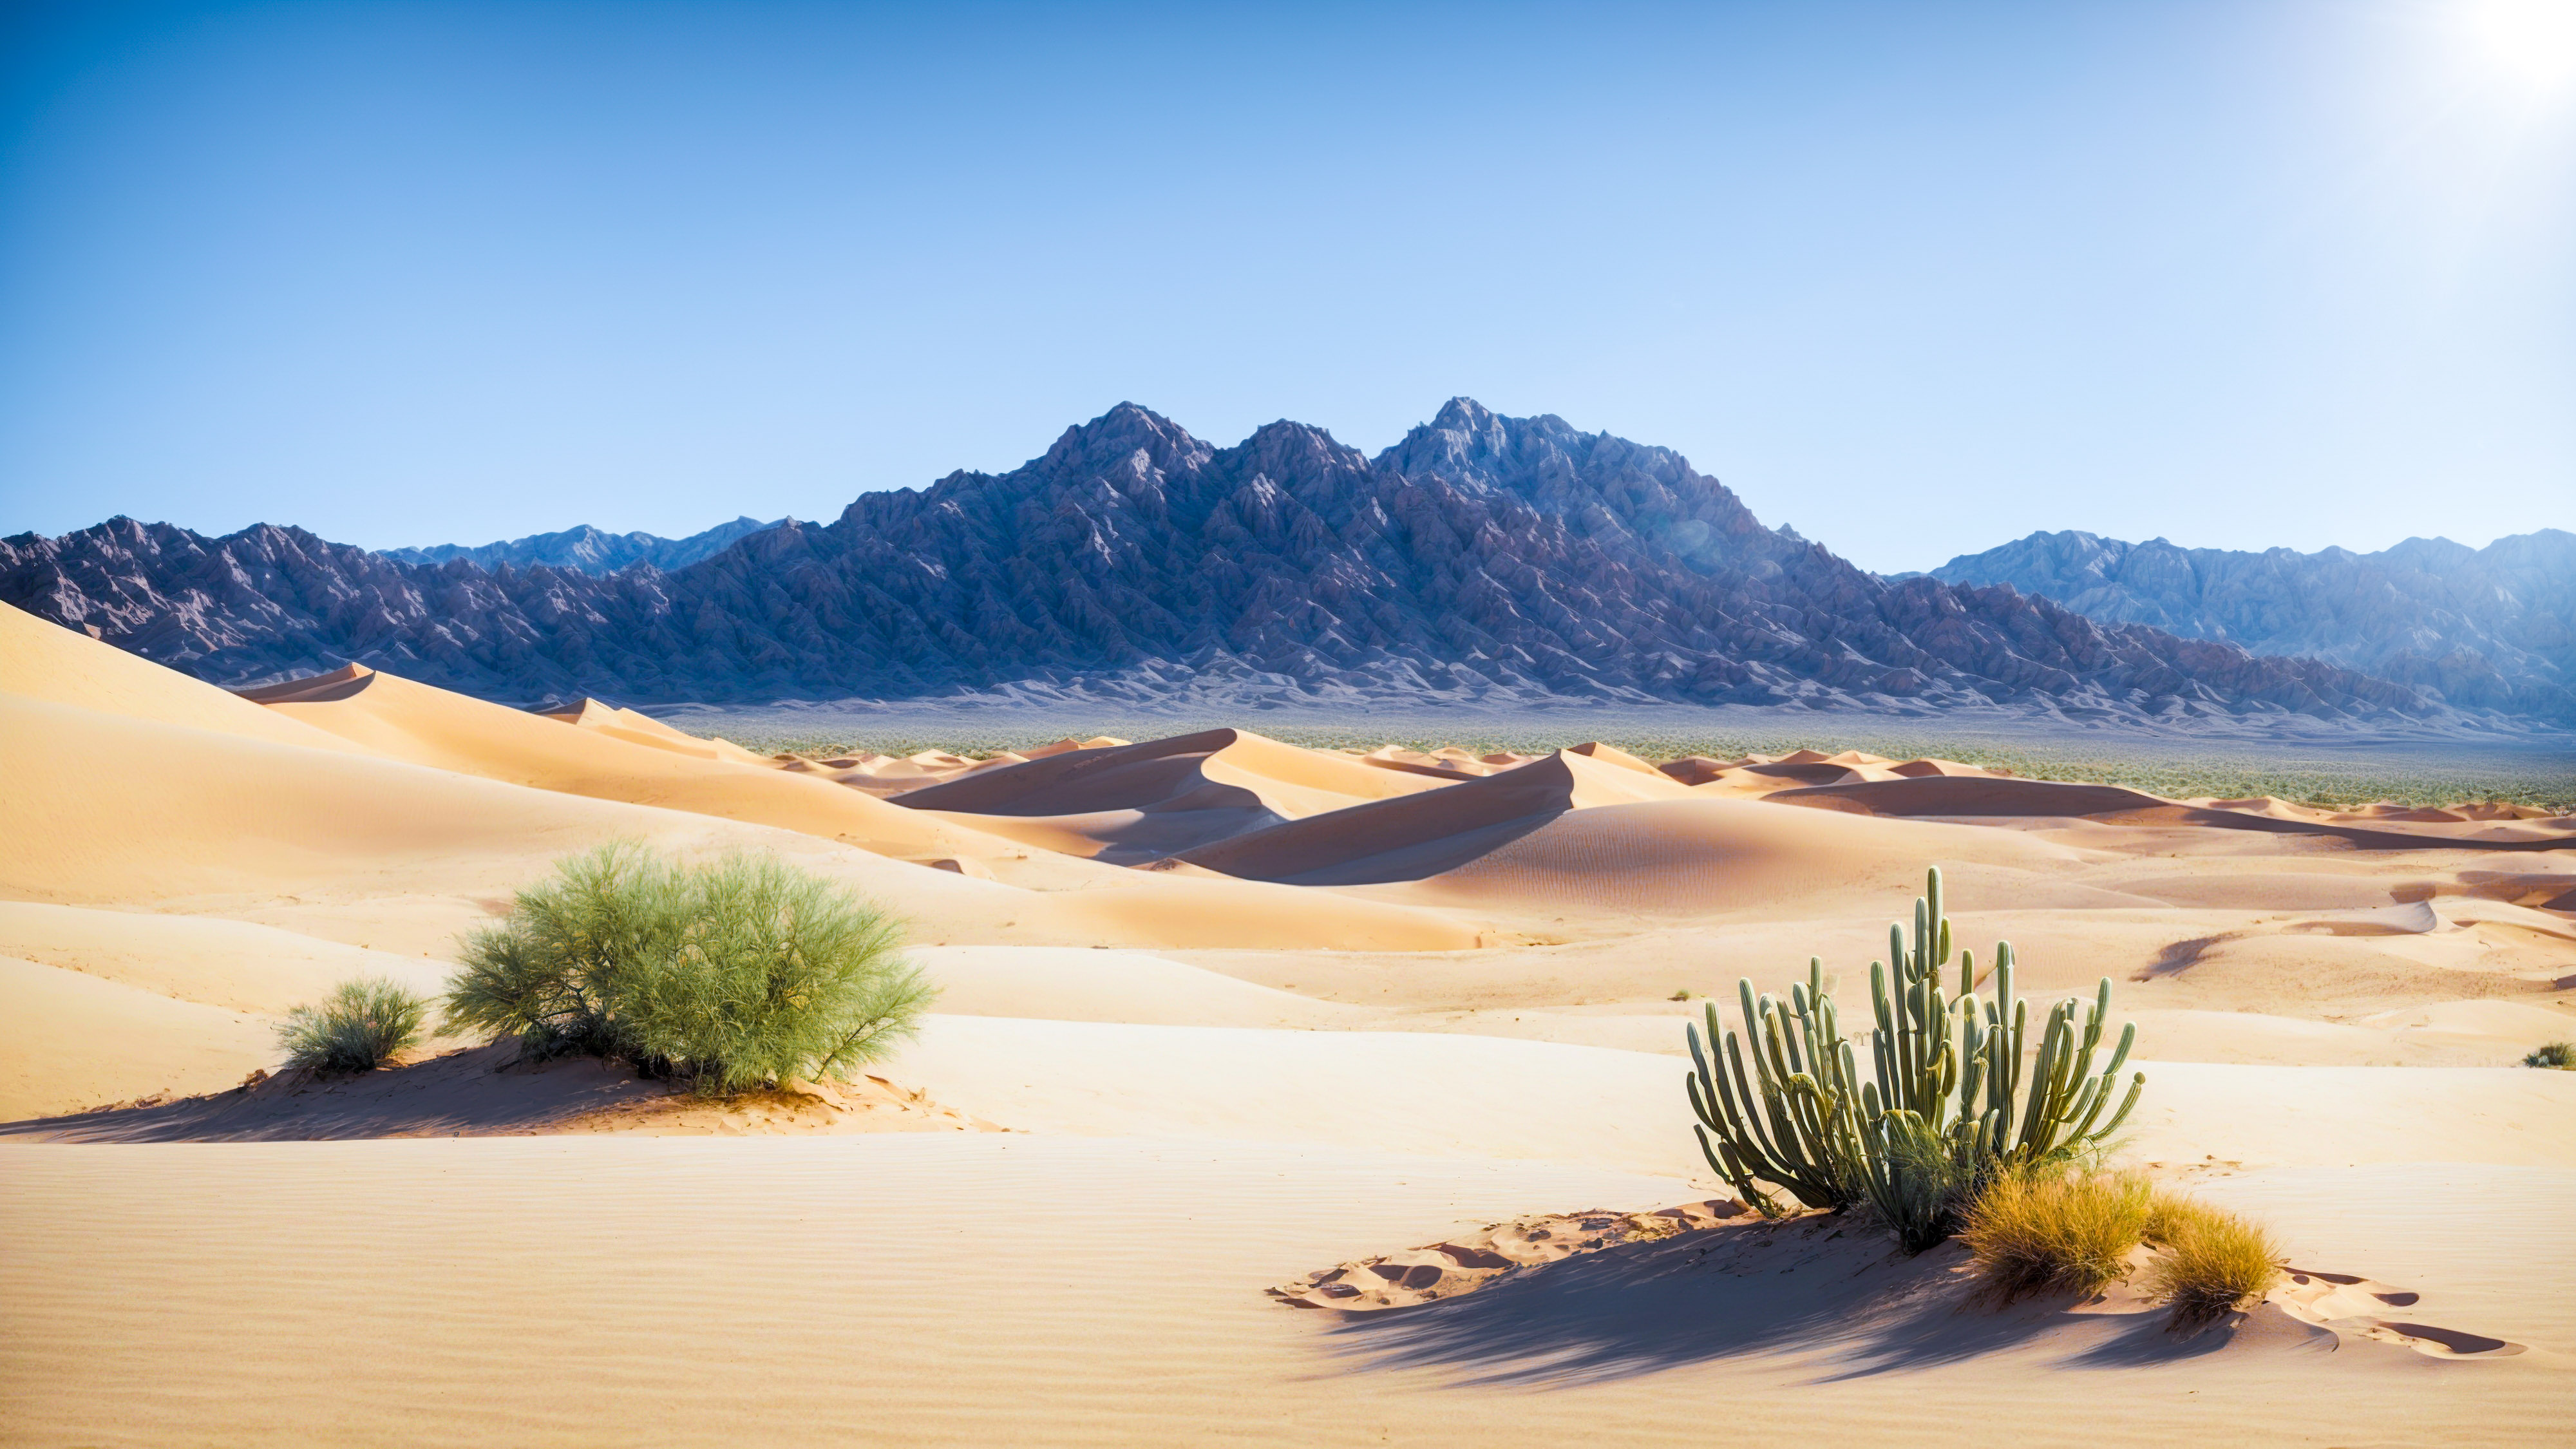 Savourez la tranquillité d'une montagne désertique avec une dune de sable et un cactus, sous un ciel bleu clair et un soleil, avec notre fond d'écran esthétique.